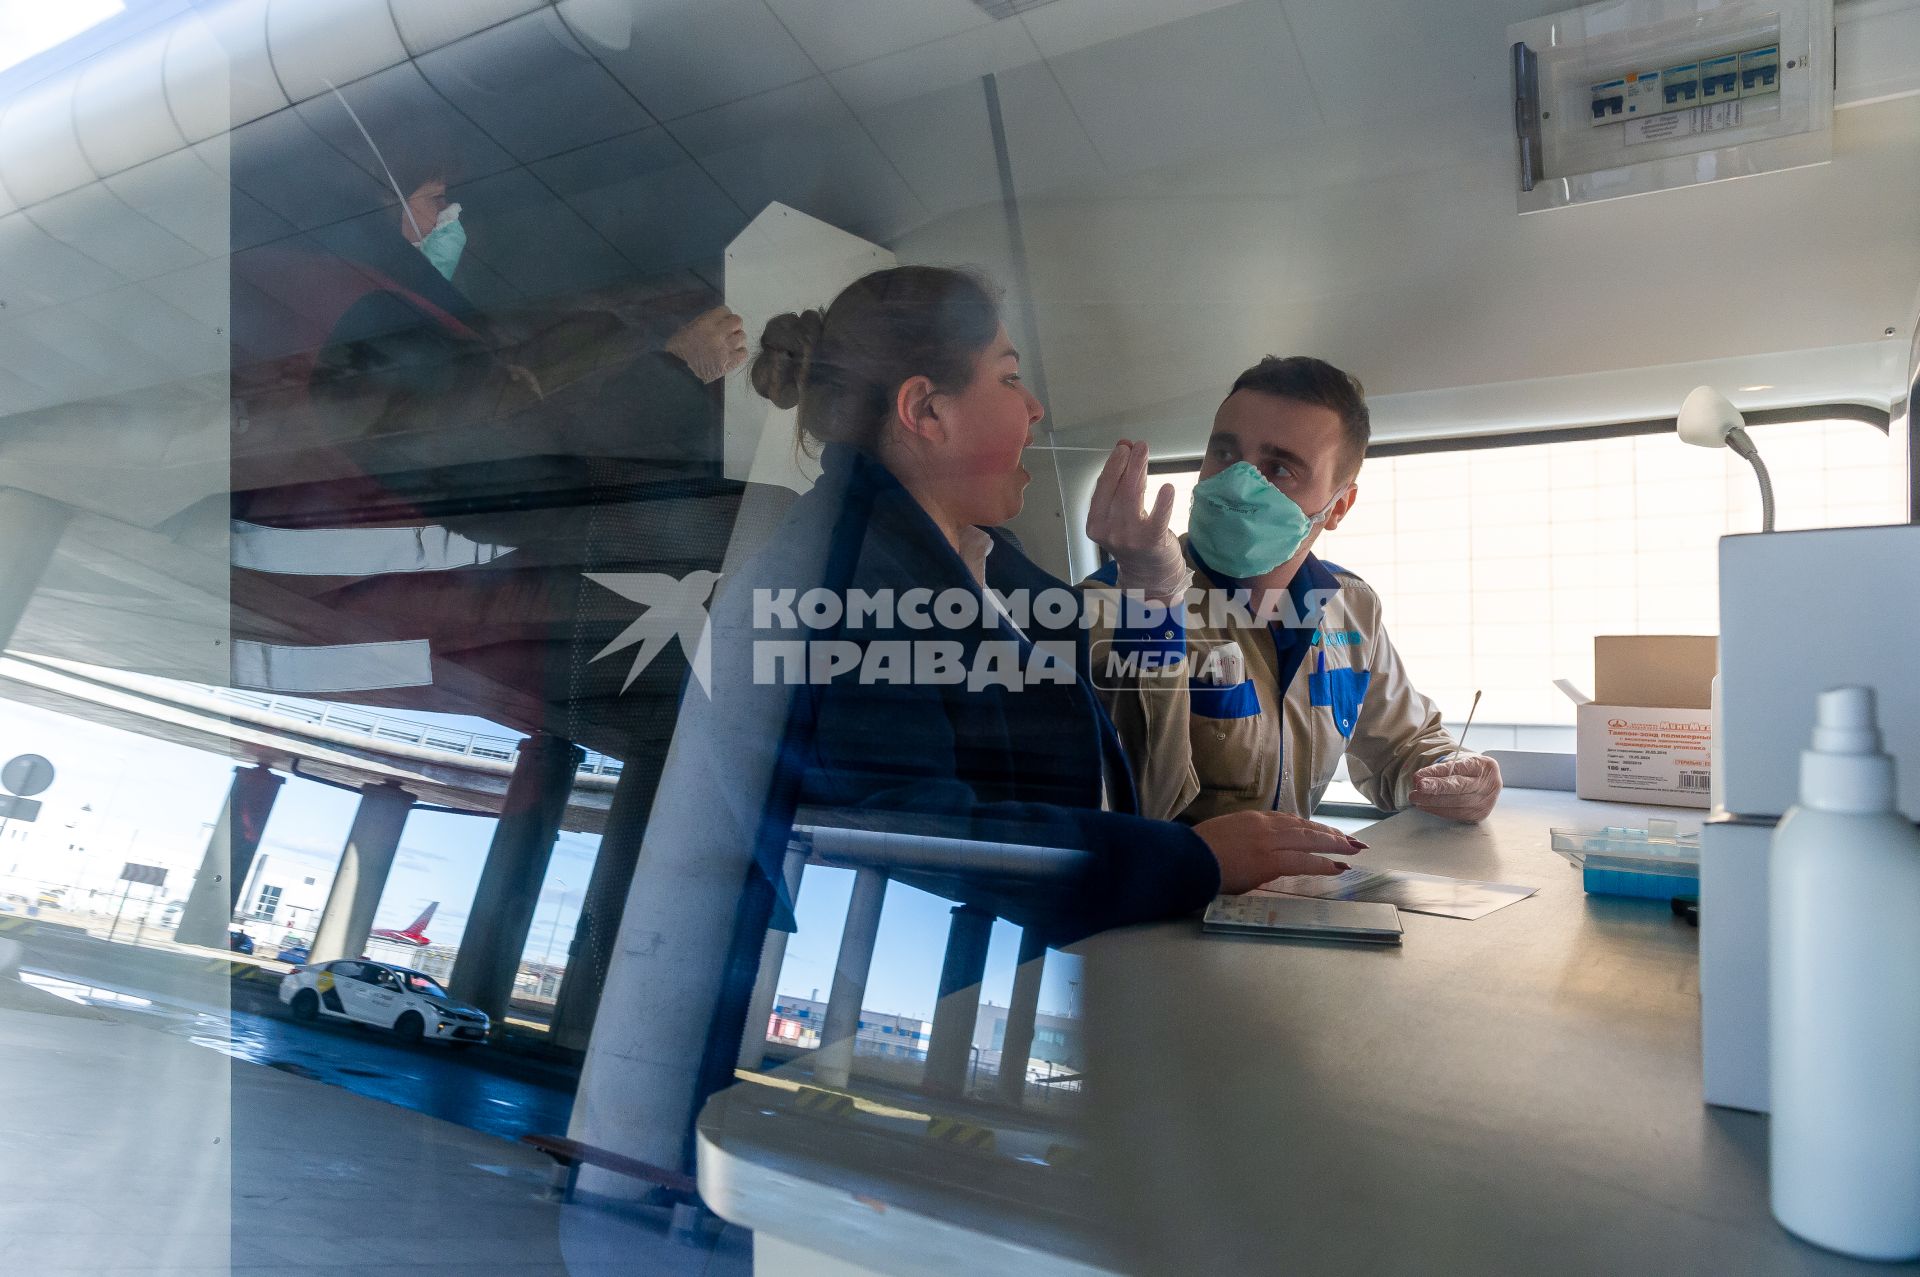 Санкт-Петербург. Сотрудники Роспотребнадзора берут пробы на тест коронавируса у прибывающих пассажиров в аэропорту Пулково.